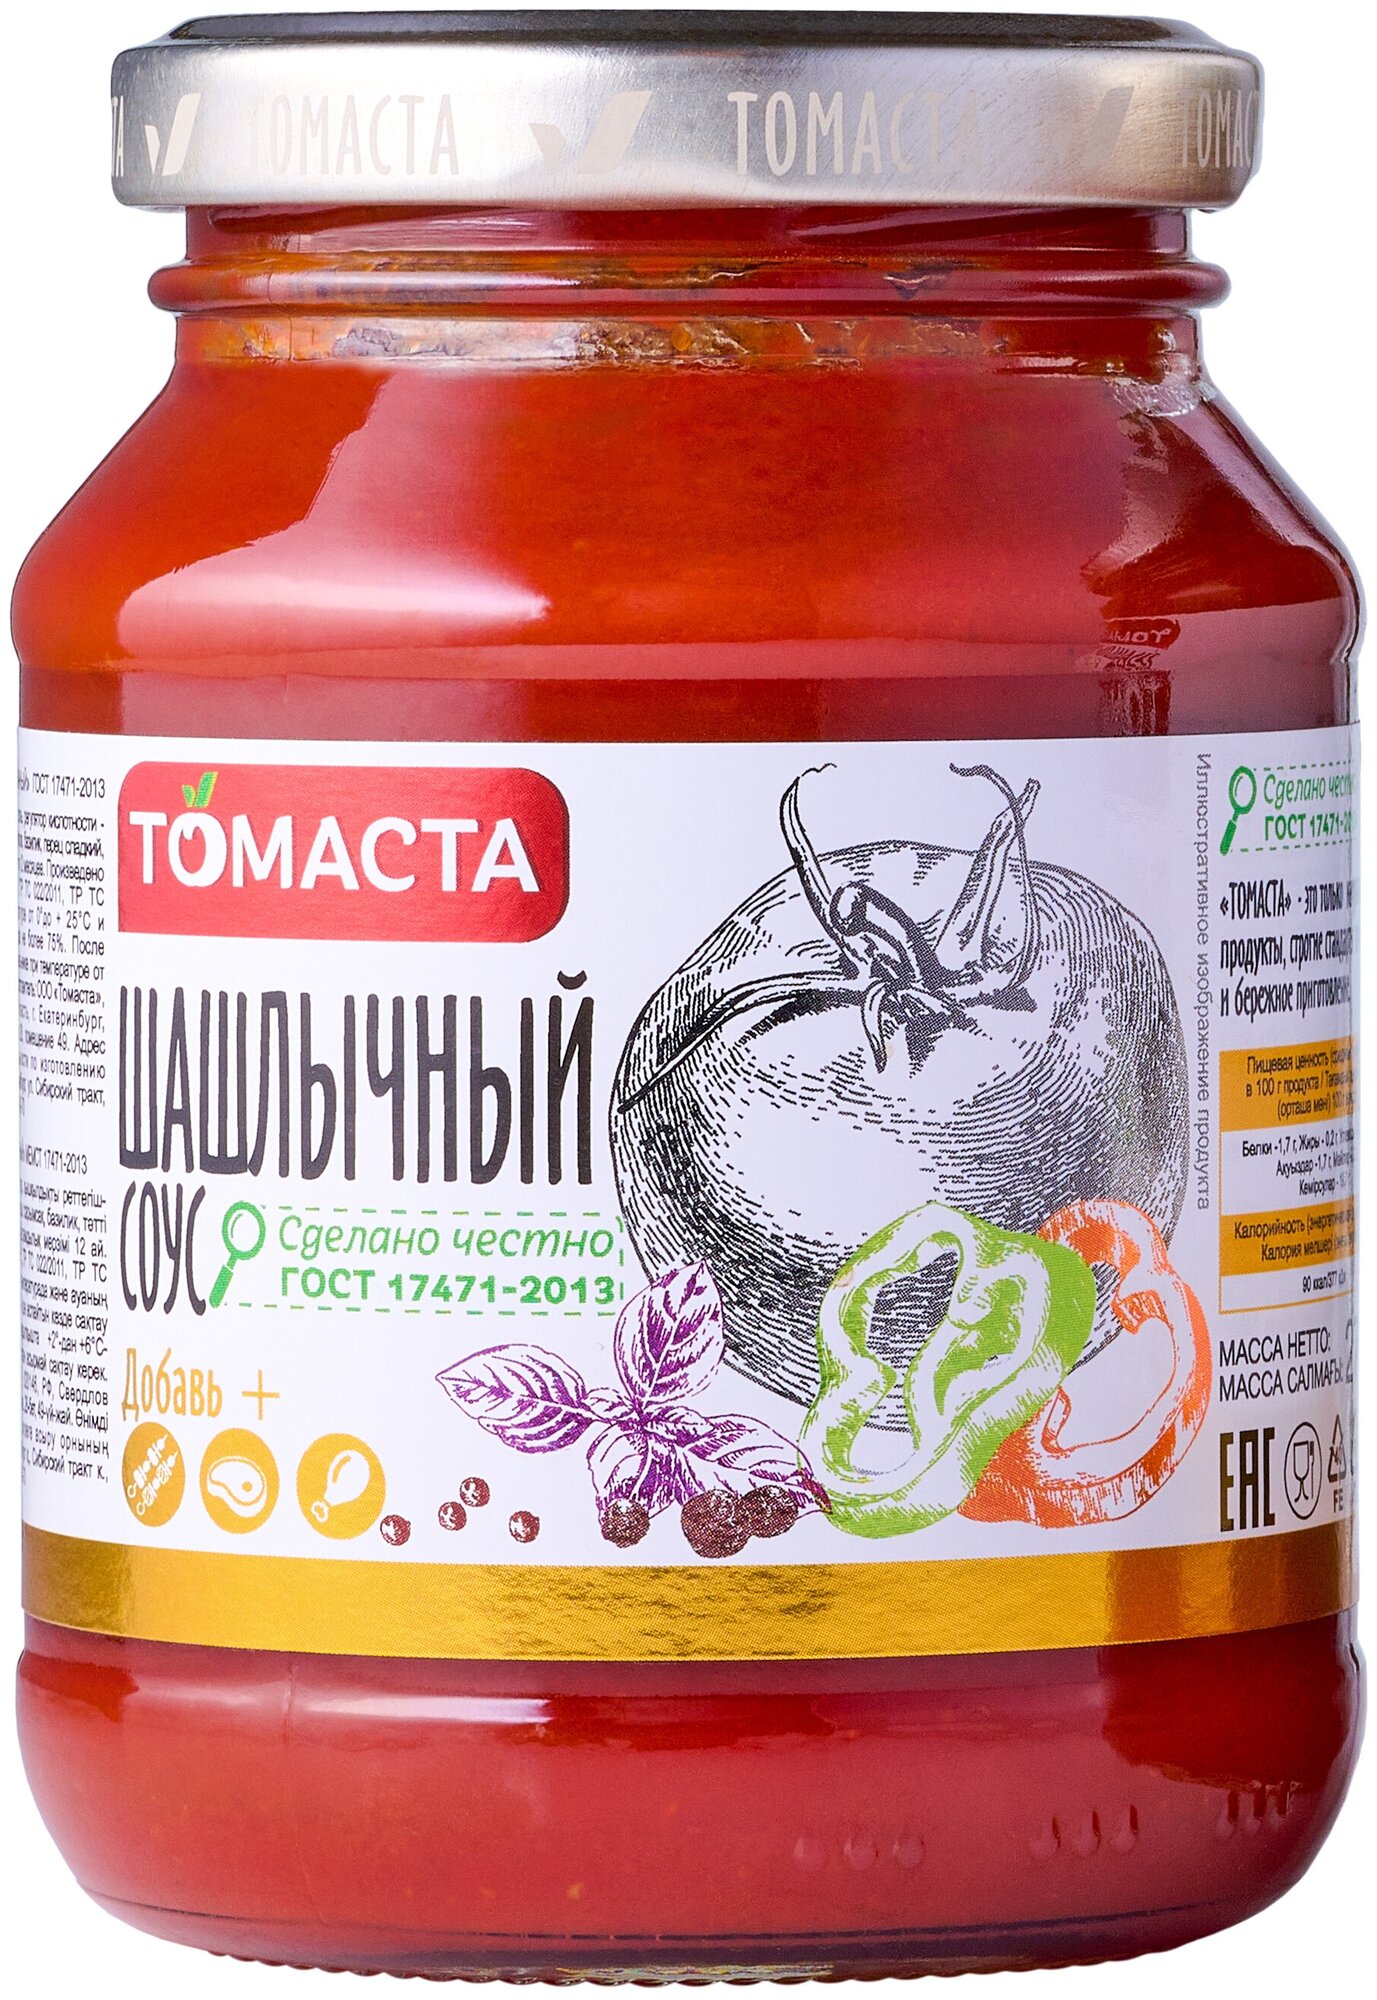 Соус томатный Шашлычный томаста 270гр. 2шт